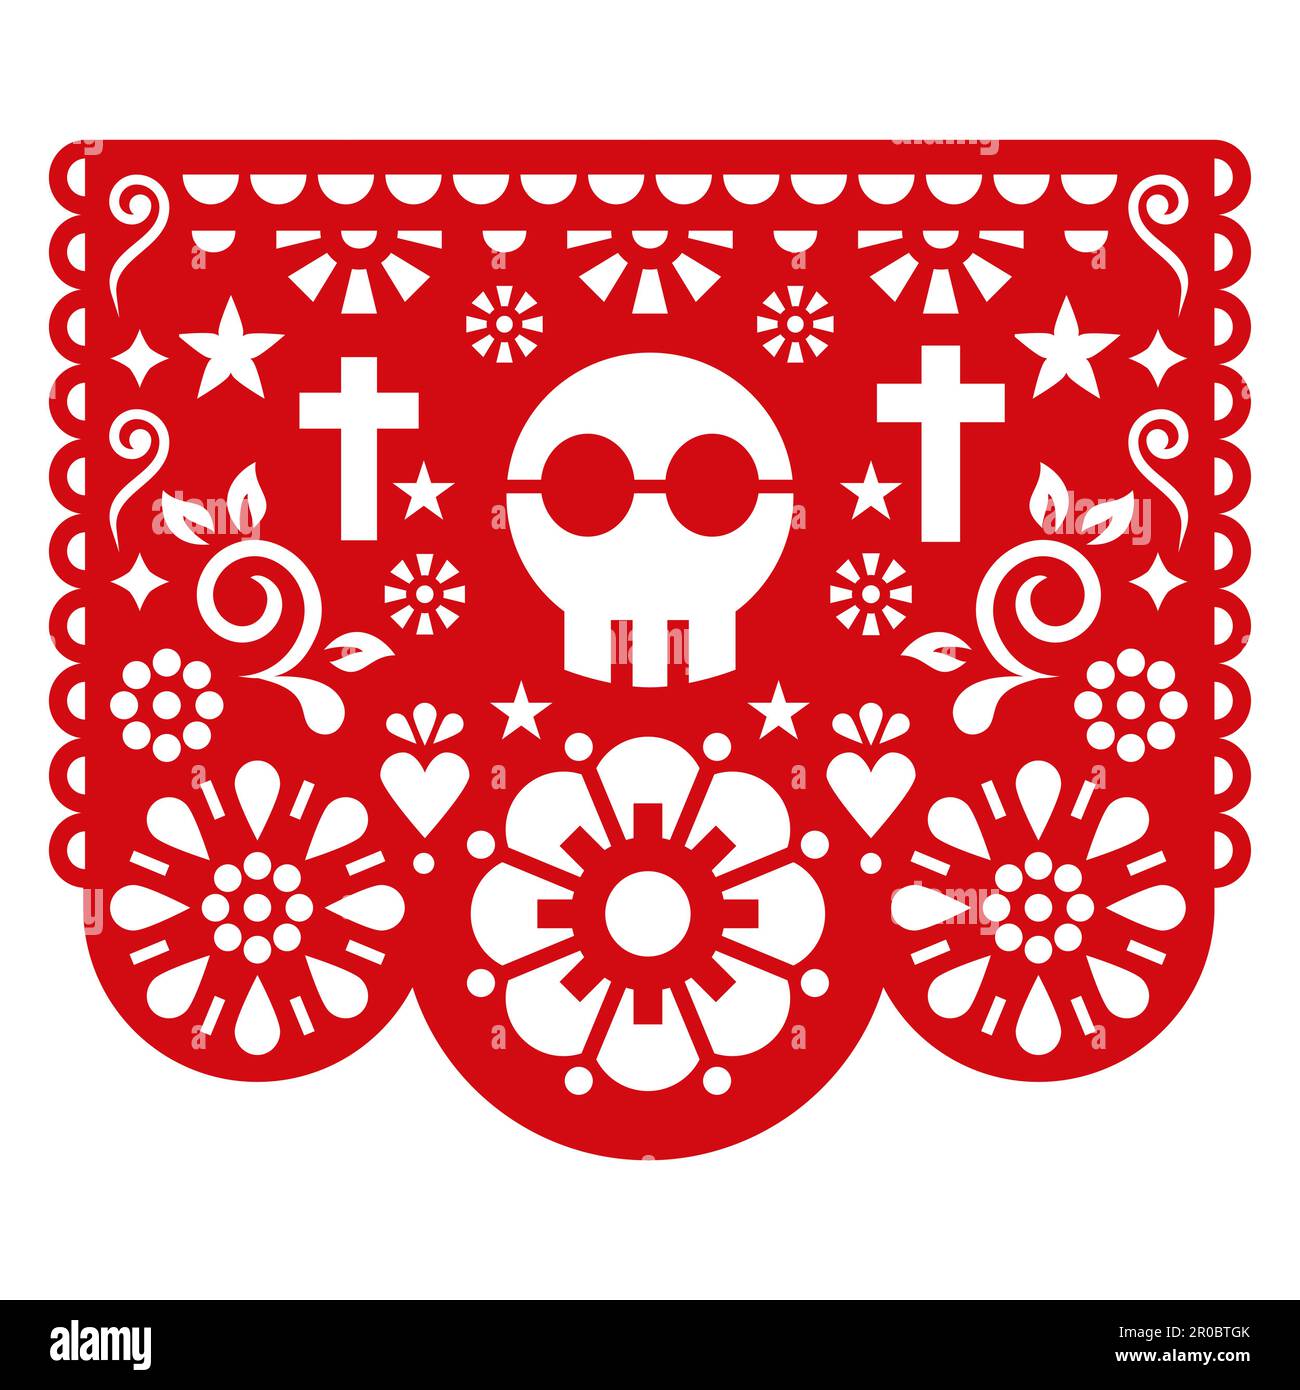 Halloween Papel Picado disegno vettoriale con cranio, fiori e croci, carta messicana ritaglio decorazione - ghirlanda partito Illustrazione Vettoriale